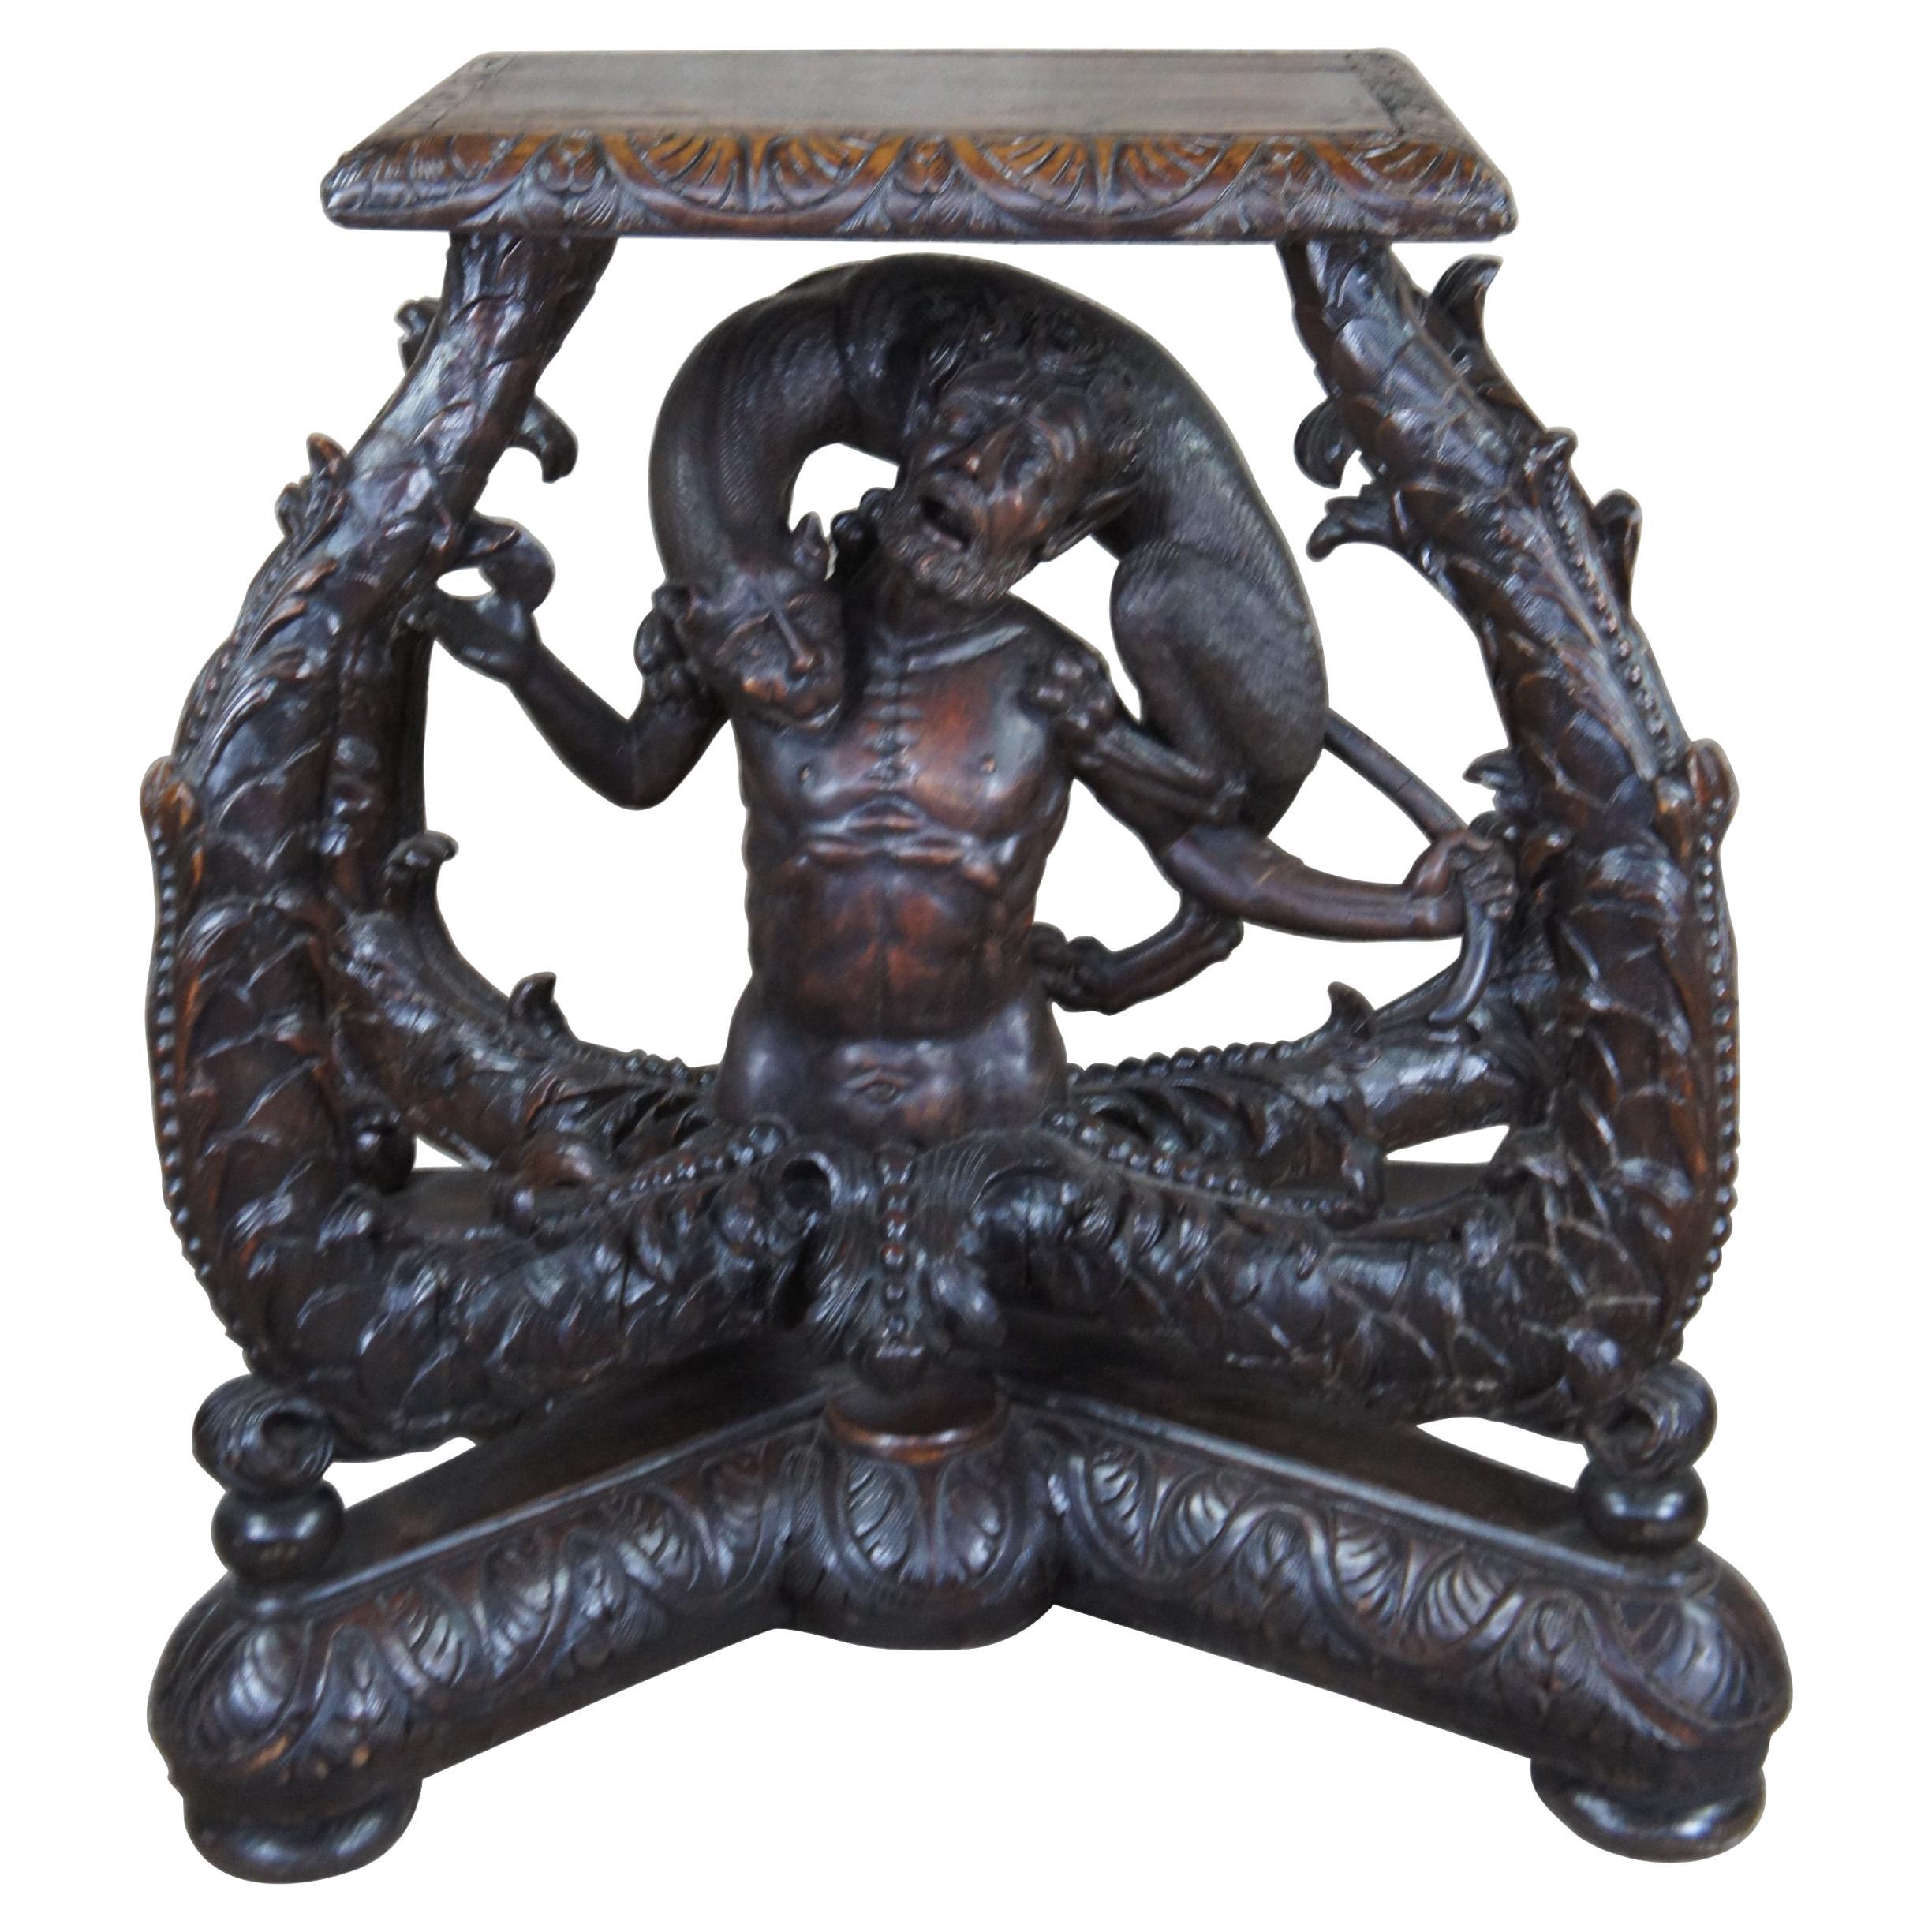 Ancien support de table à piédestal en chêne continental sculpté du 19ème siècle, panthère d'homme